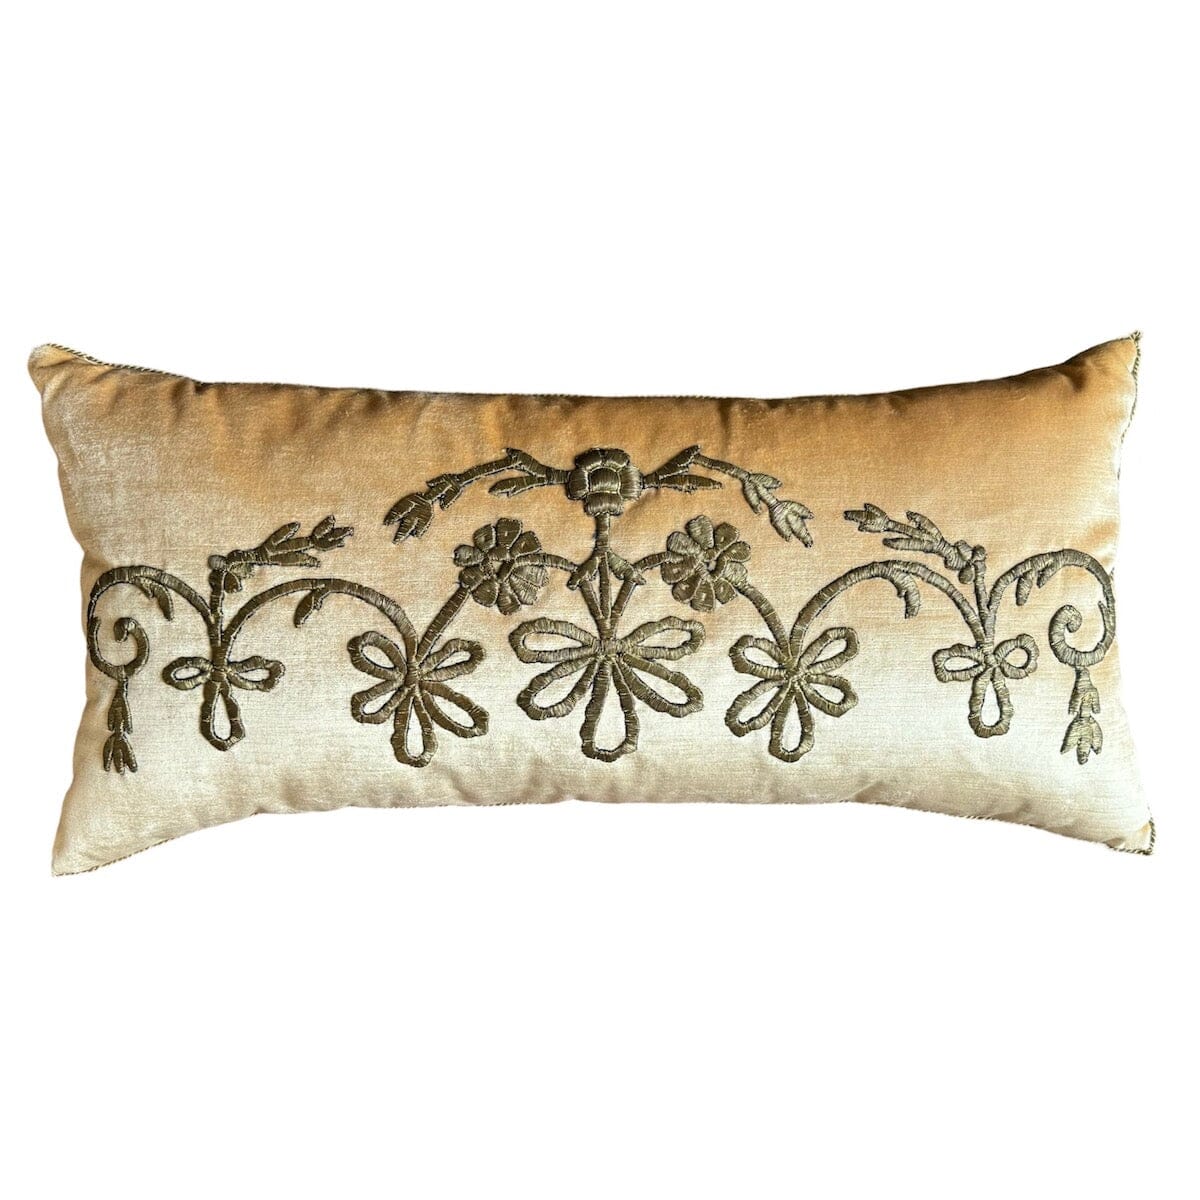 Antique Ottoman Empire Gold Metallic Embroidery (#E030124 | 15 x 31") New Pillows B. Viz Design 